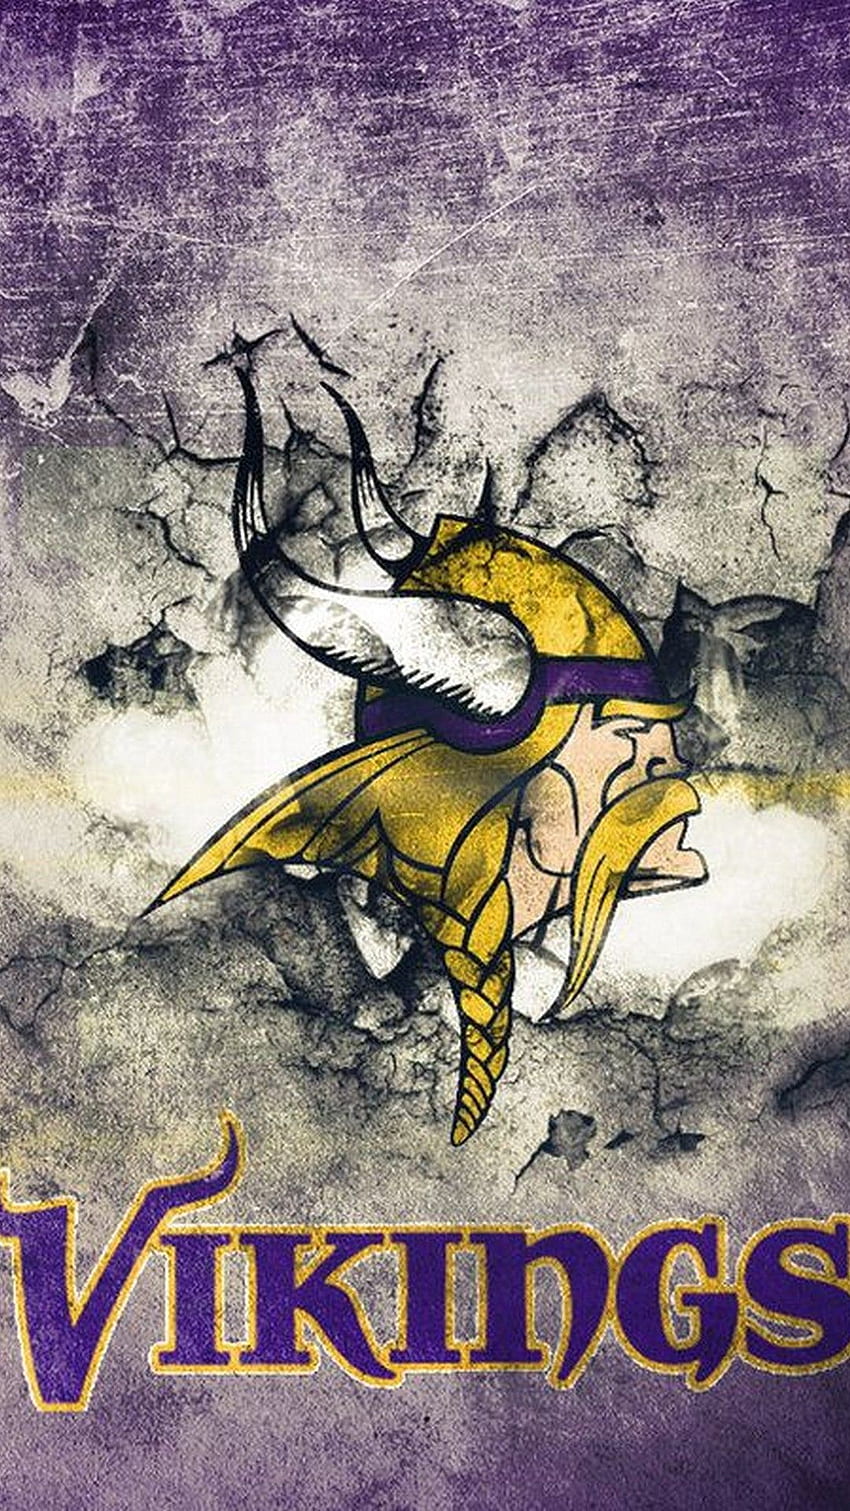 Minnesota Vikings Logo Wallpapers  Top 28 Best Minnesota Vikings Logo  Wallpapers  HQ 